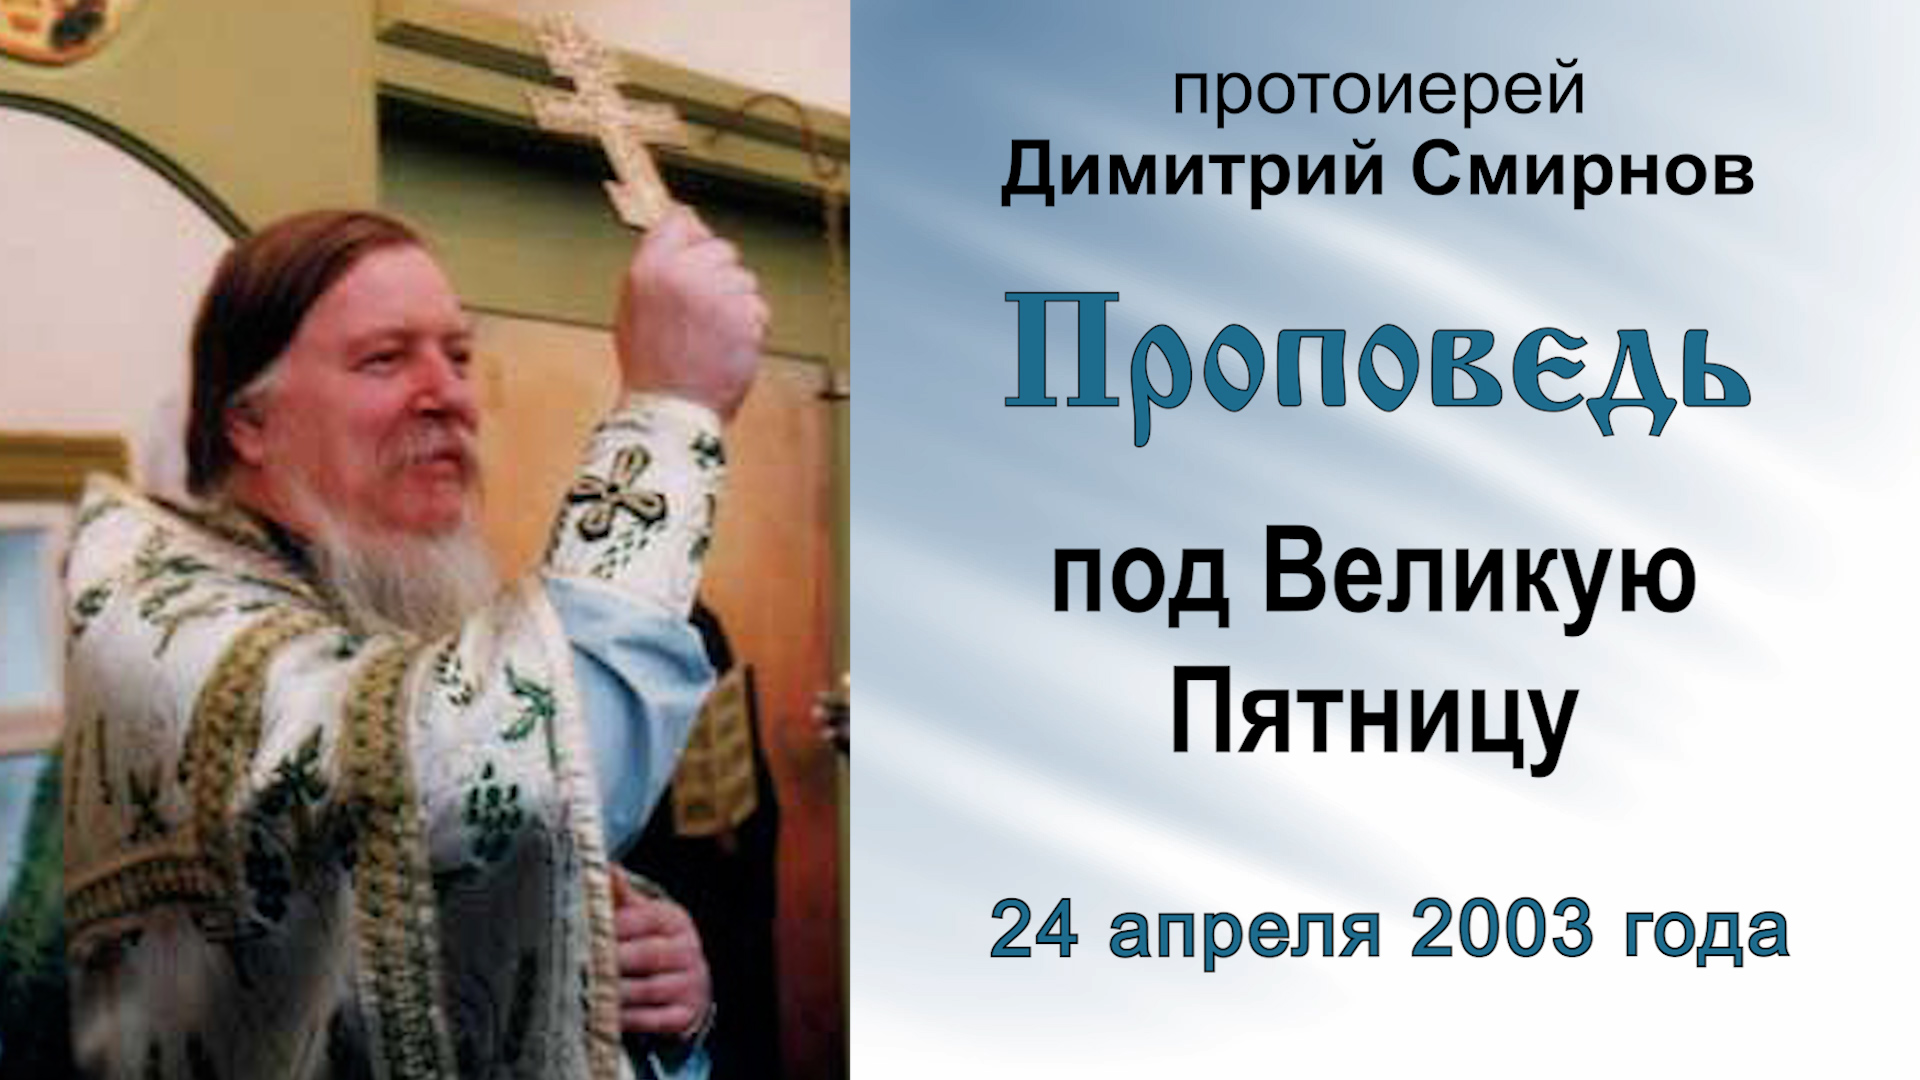 Проповедь под Великую Пятницу (2003.04.24). Протоиерей Димитрий Смирнов